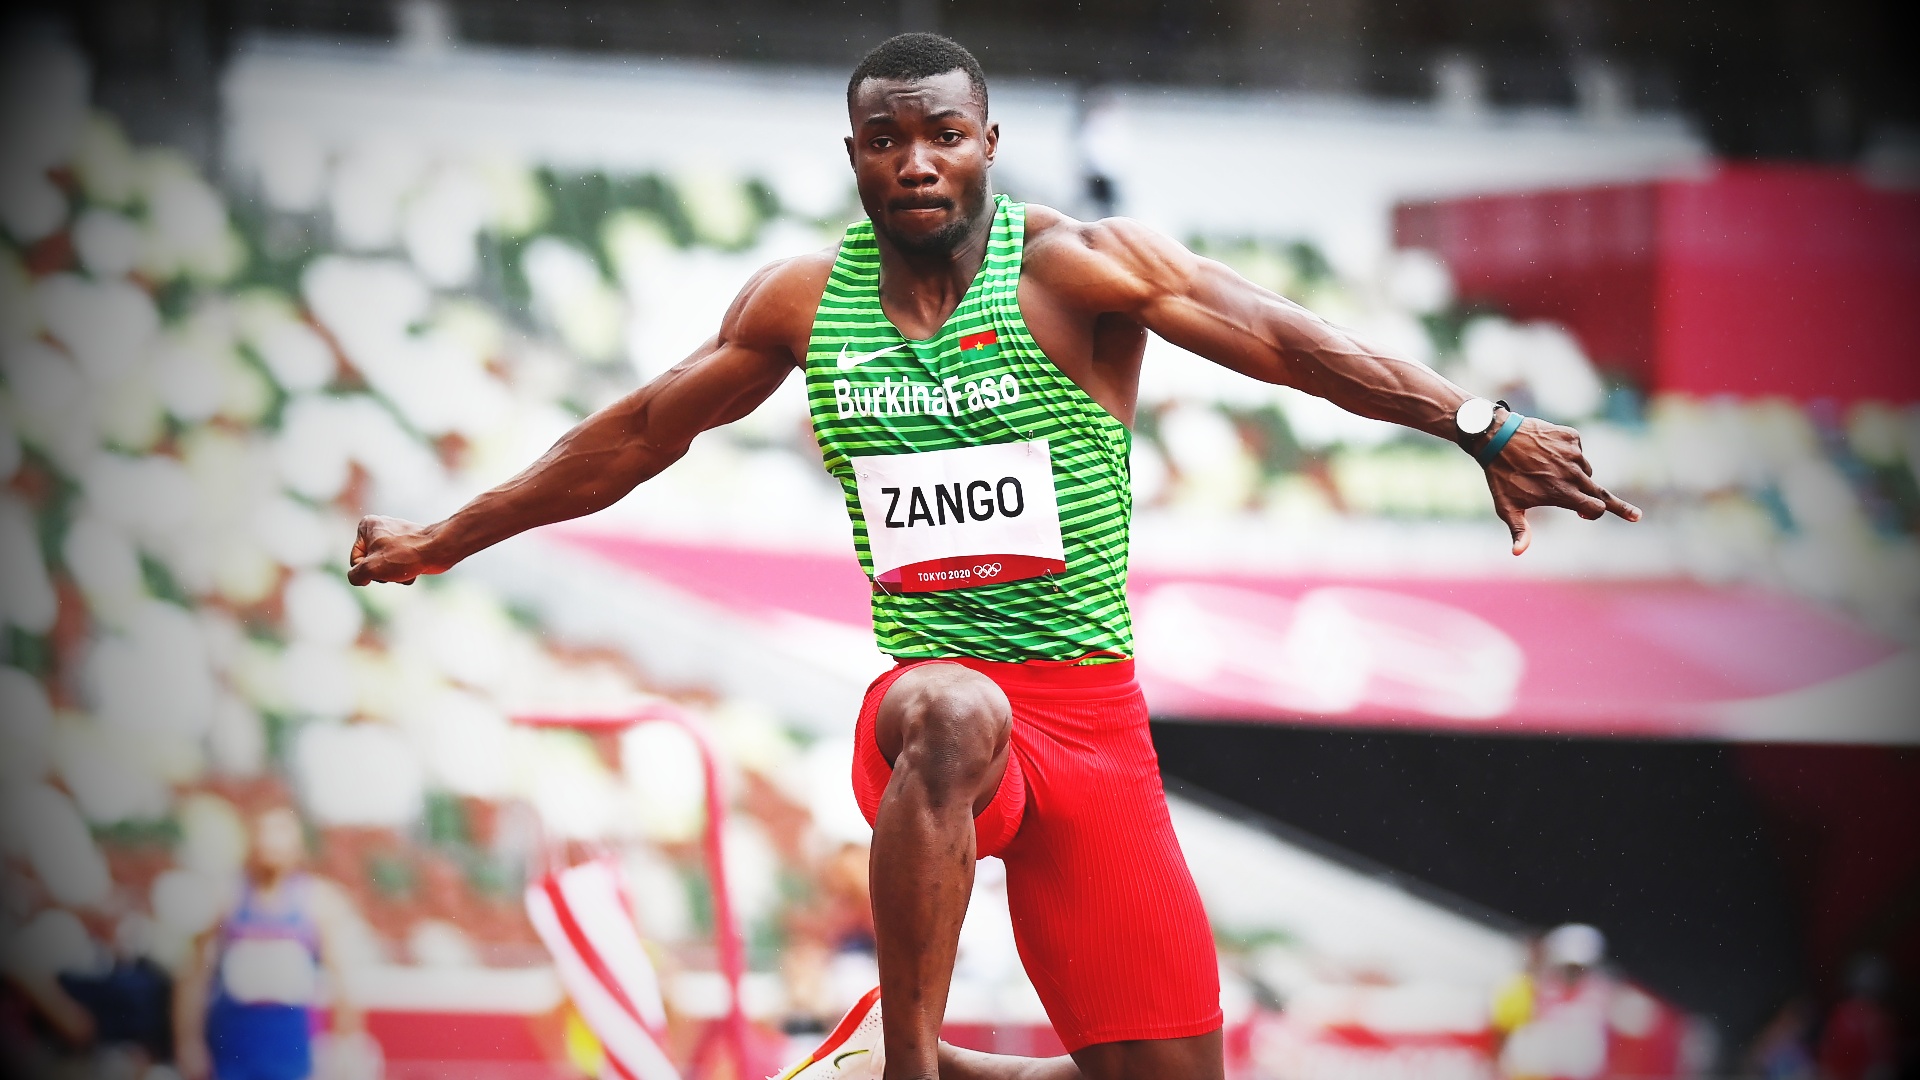 Как буркинийский прыгун завоевал первую олимпийскую медаль для своей страны